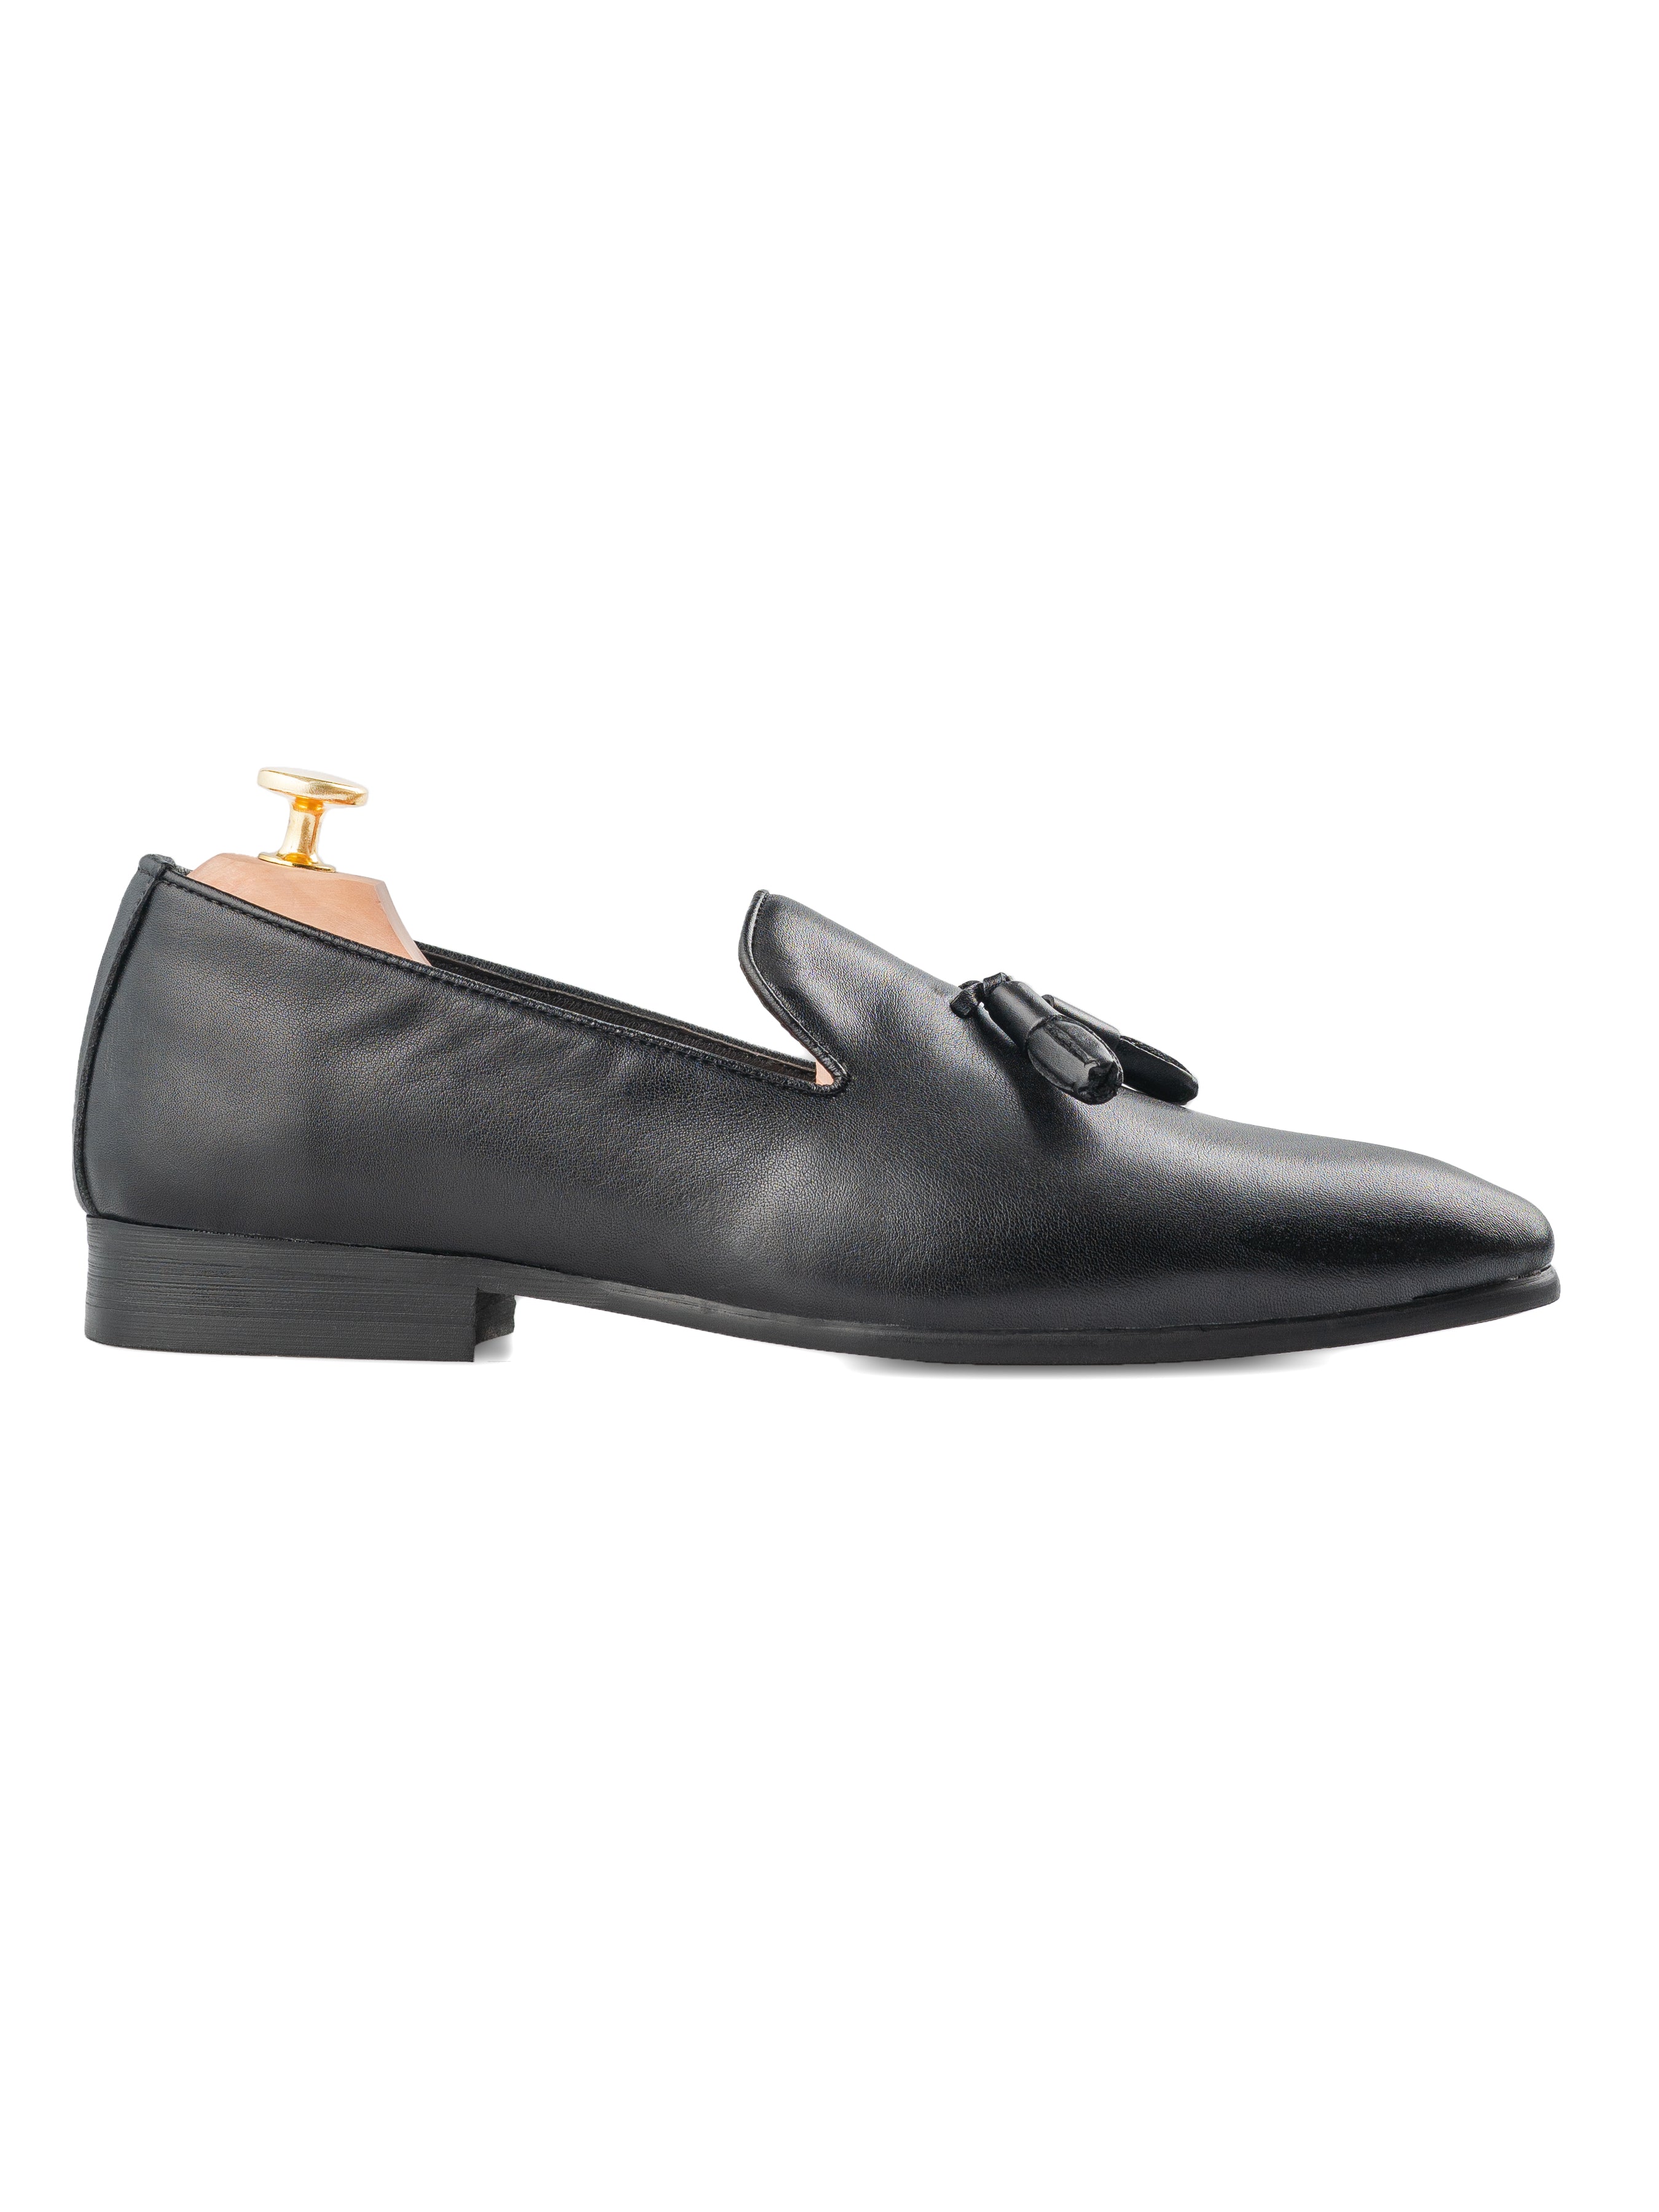 Loafer Slipper - Solid Black Leather